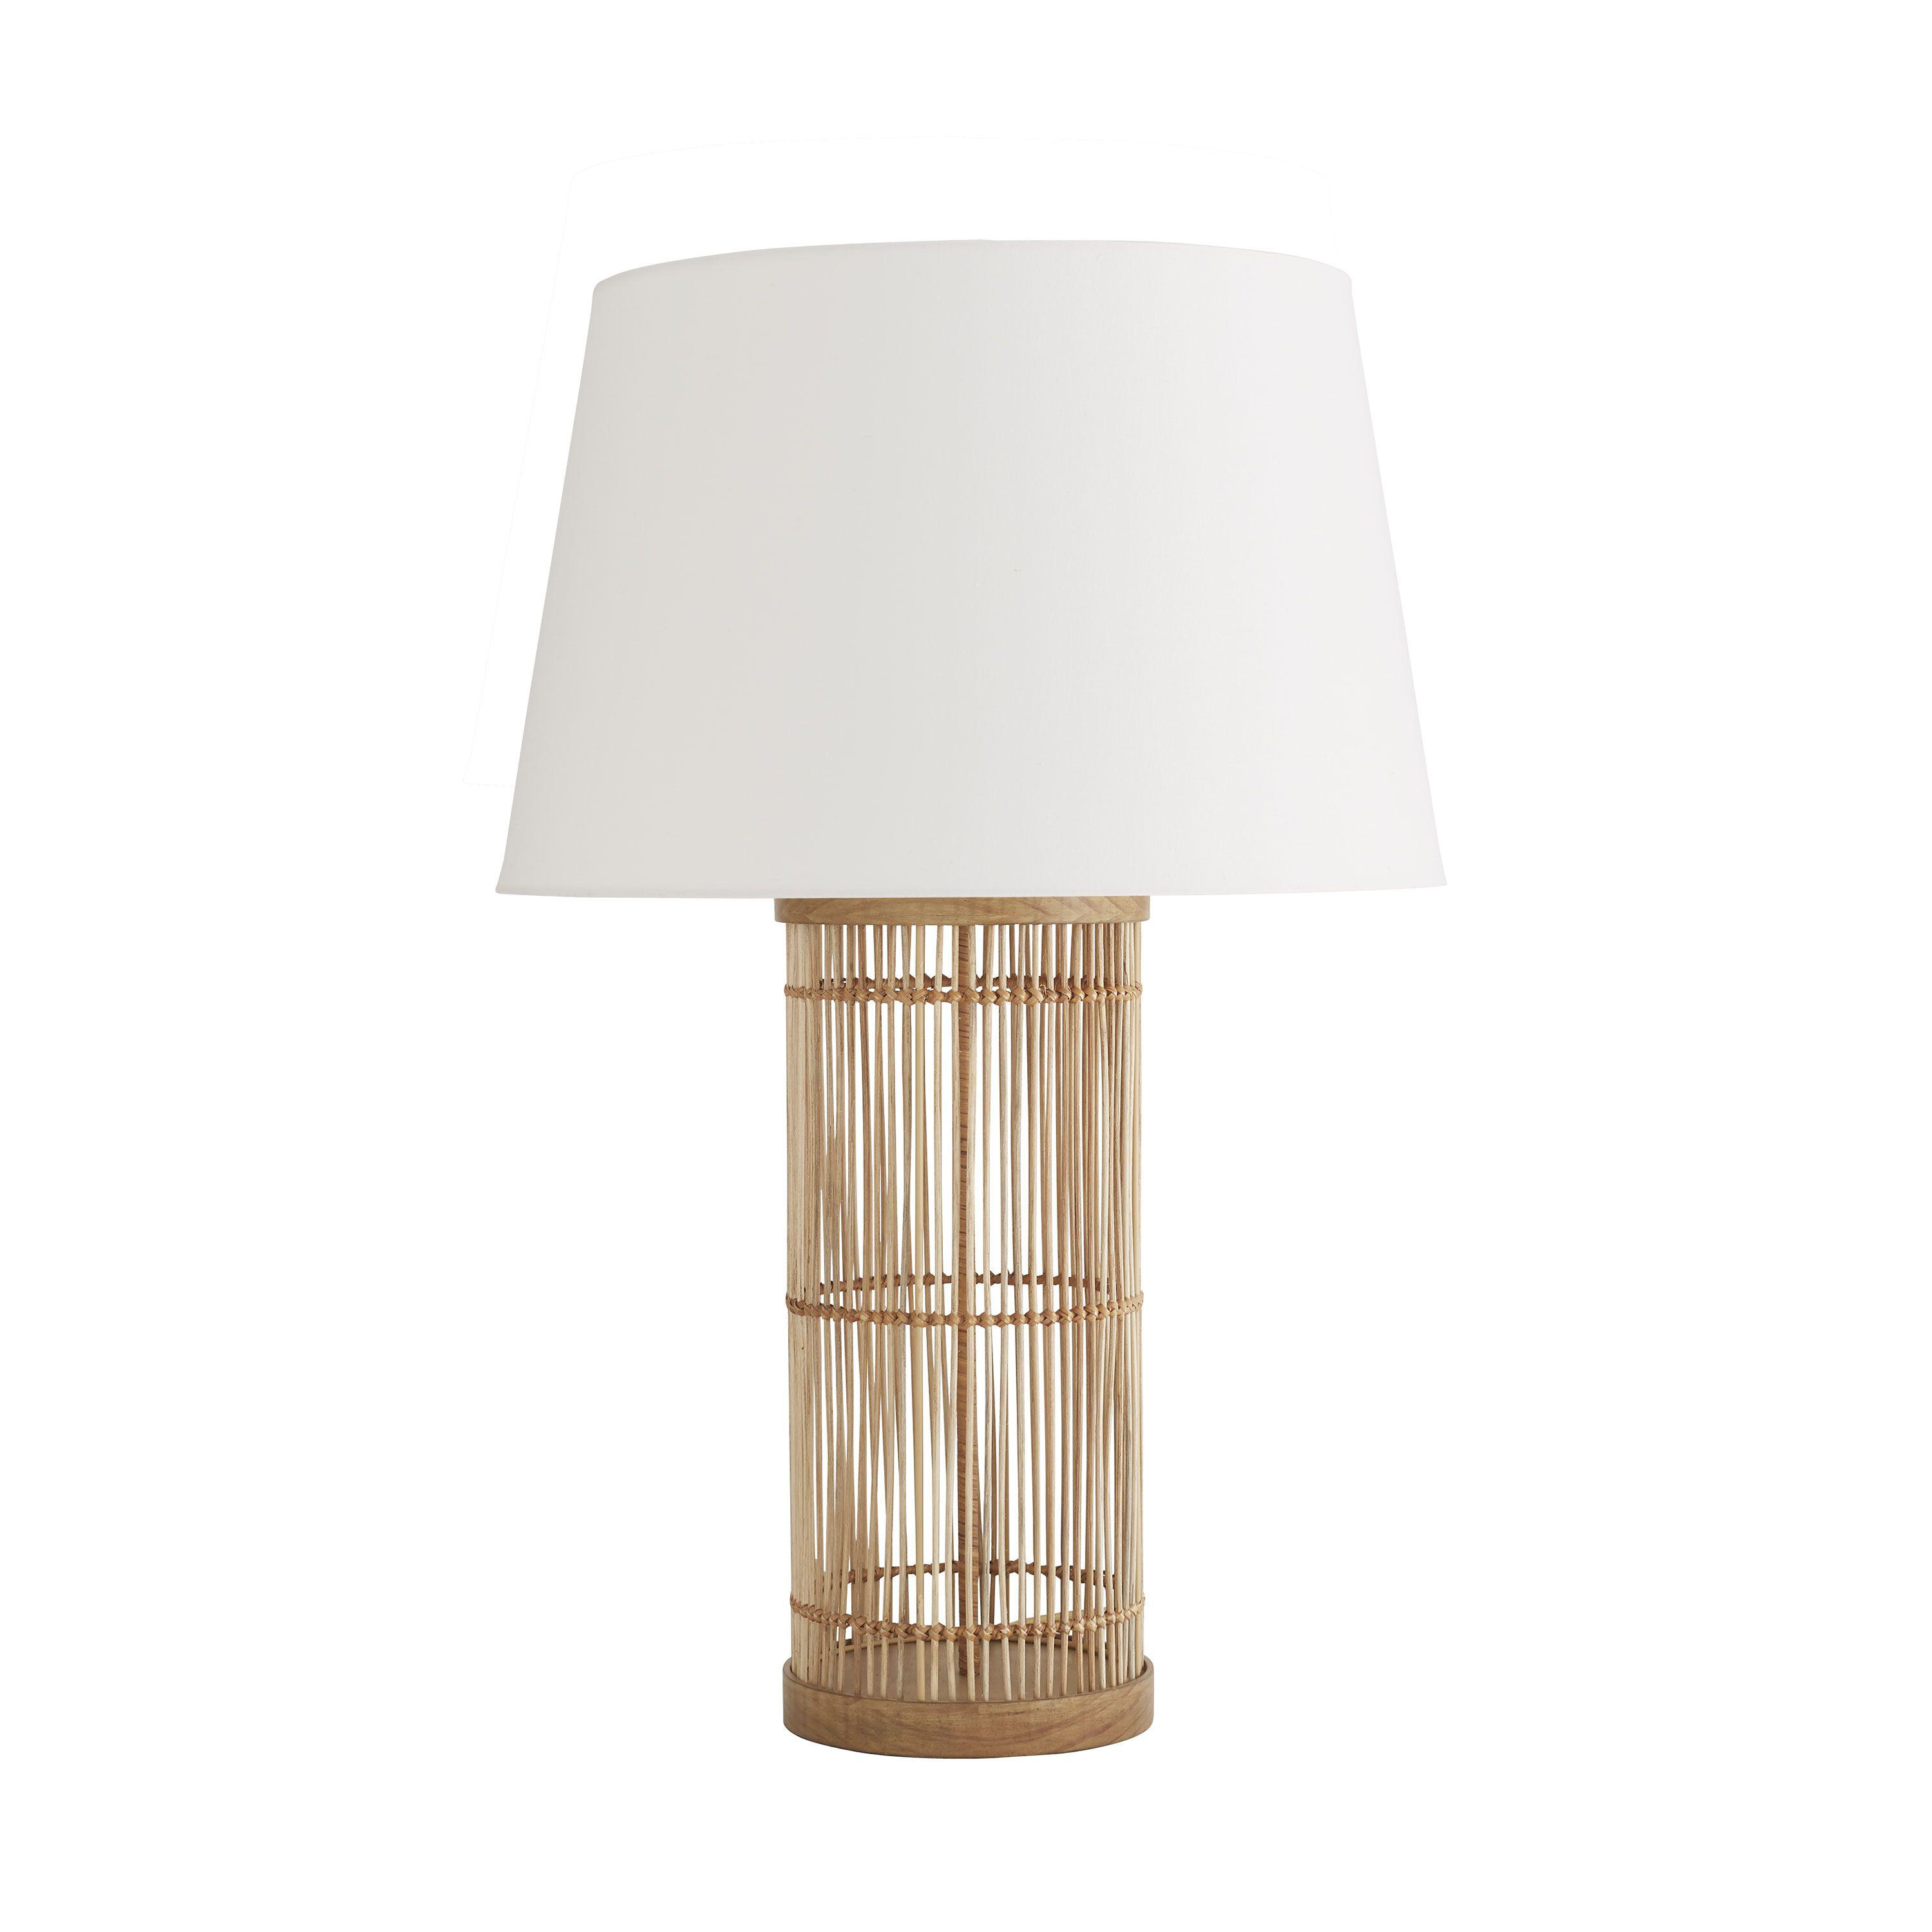 Купить Настольная лампа Panama Lamp в интернет-магазине roooms.ru